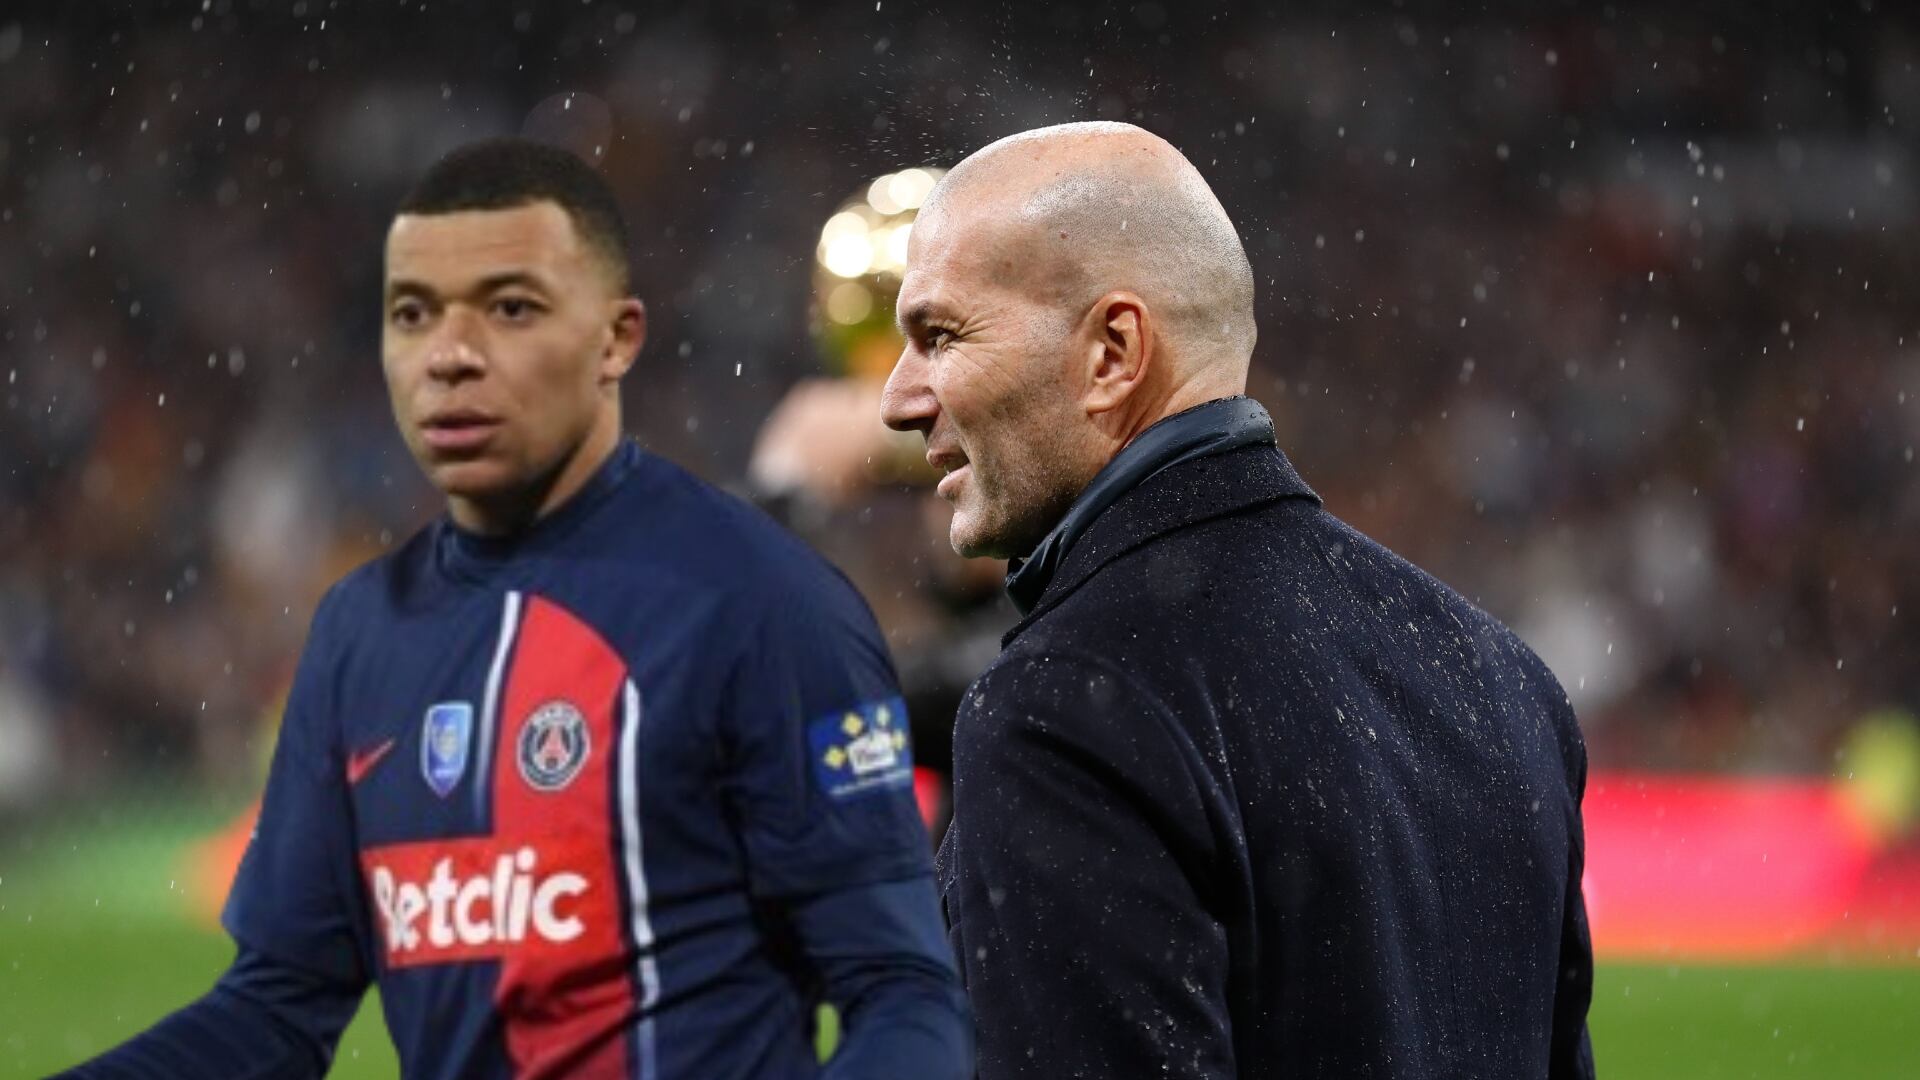 Zidane ya tiene equipo, es leyenda del Madrid y ahora podría robarle a Mbappé